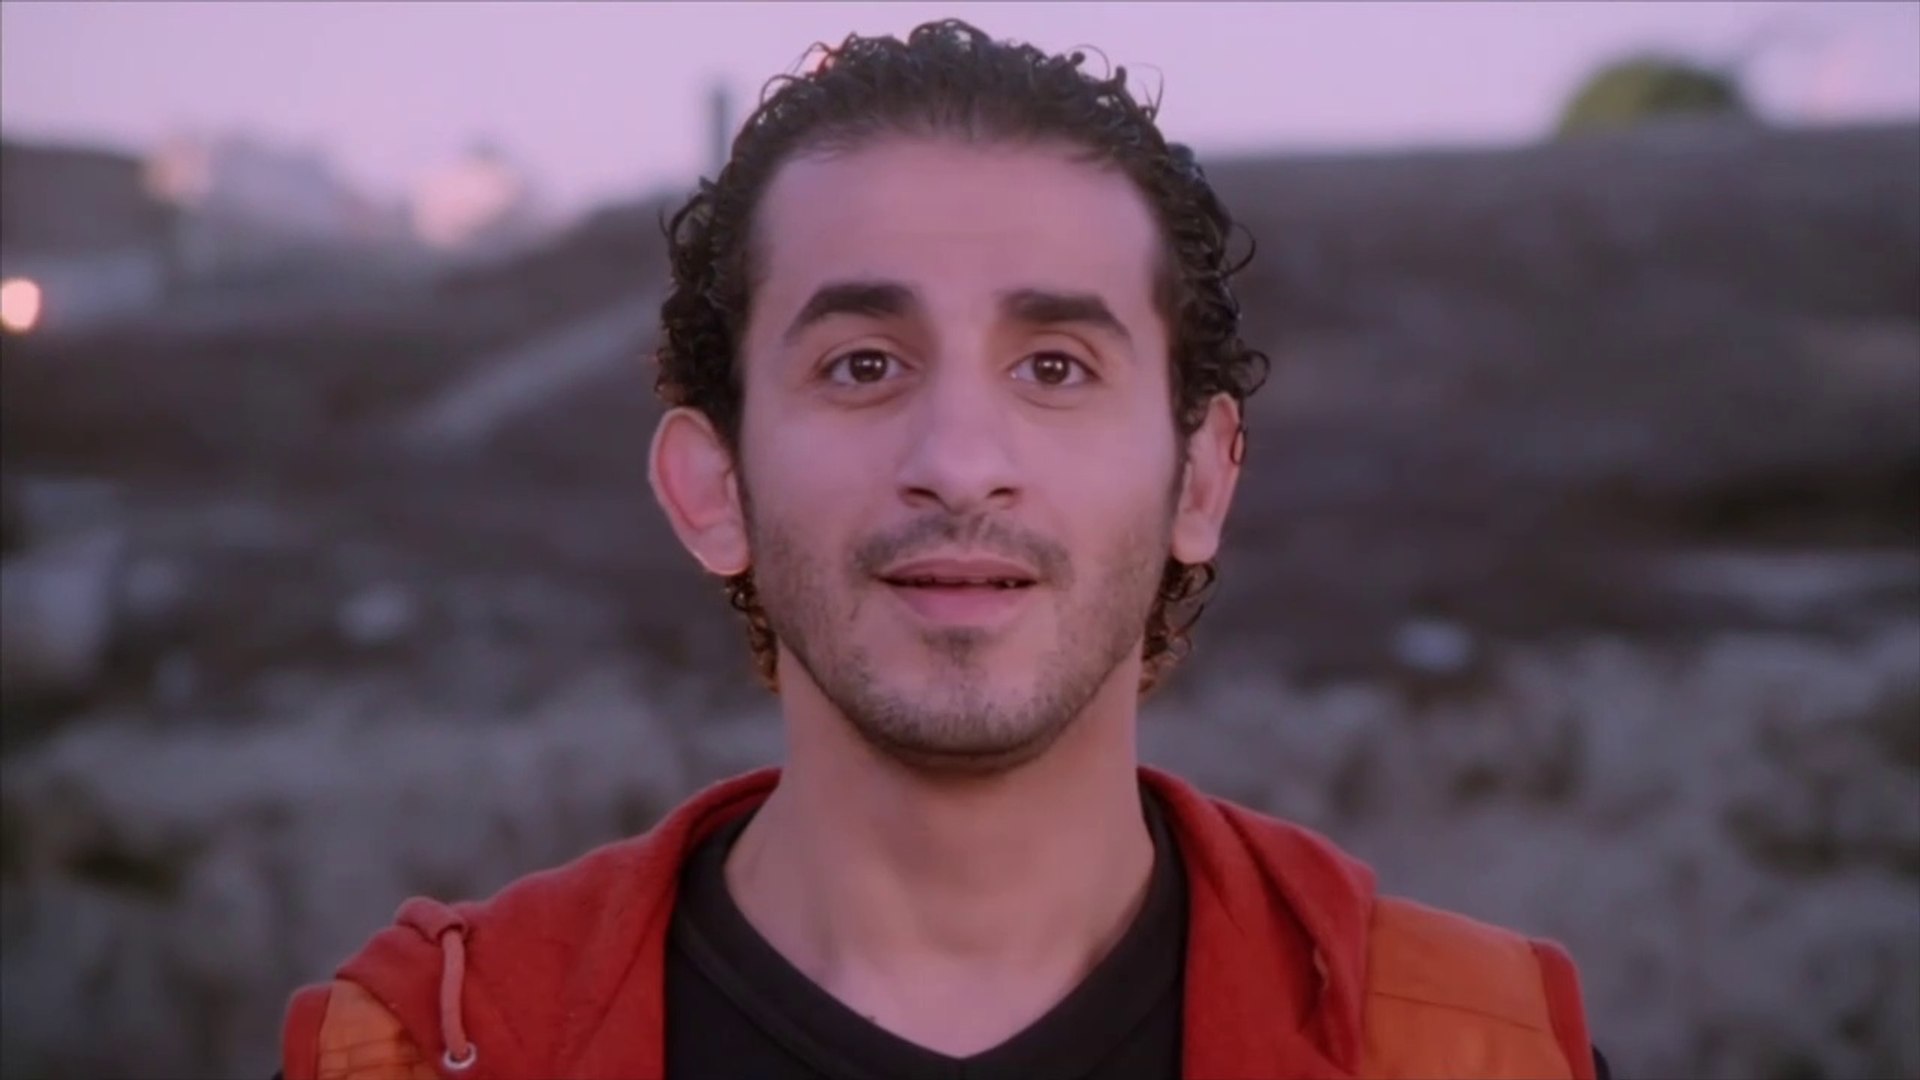 فيلم صايع بحر بطولة أحمد حلمي كامل - فيديو Dailymotion